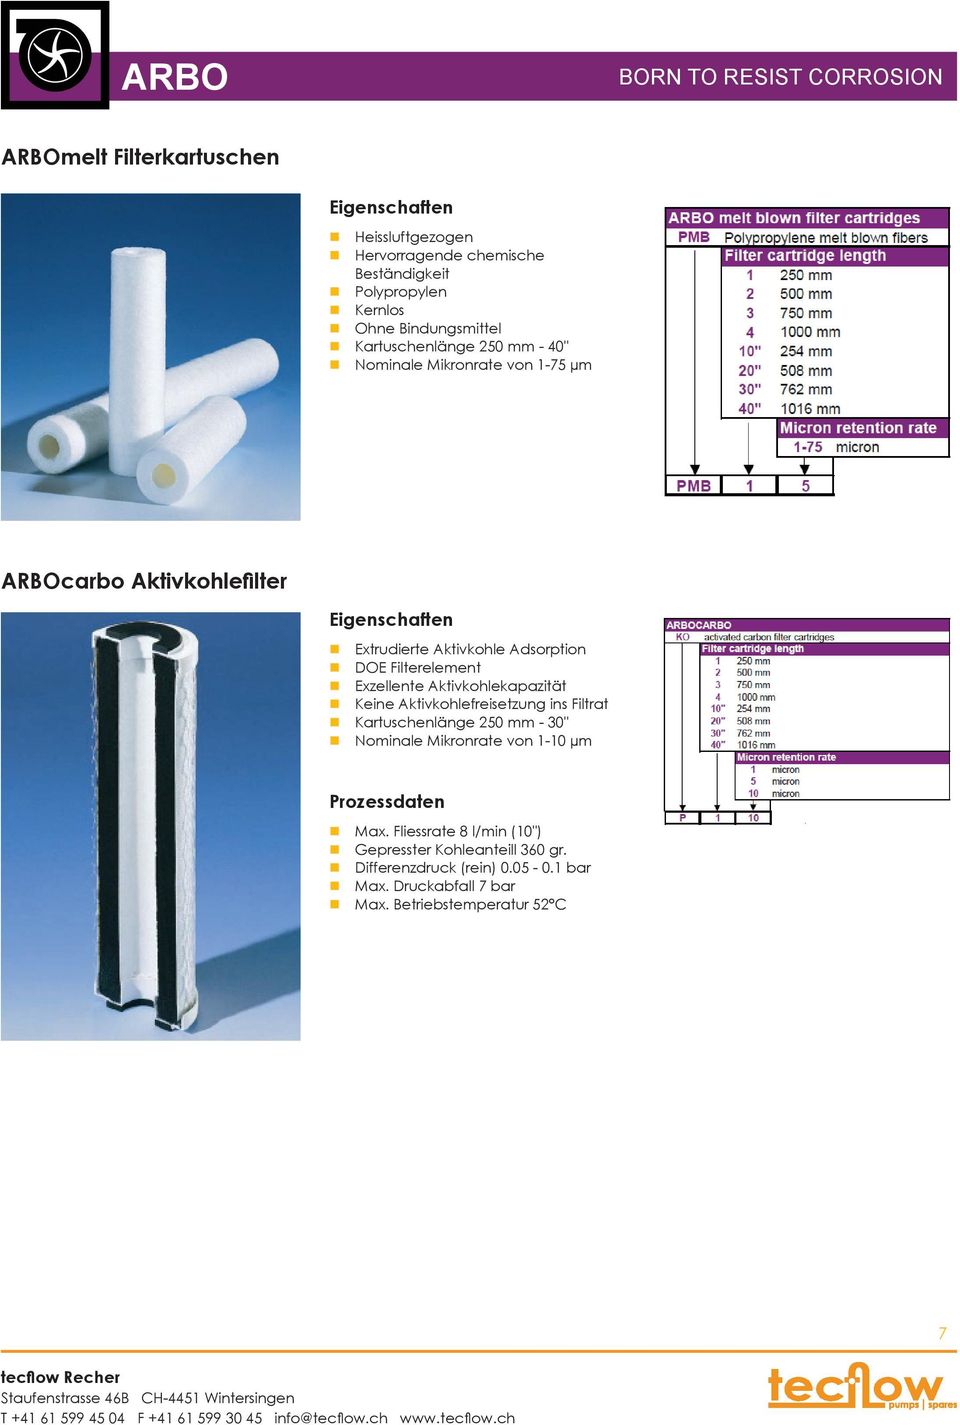 Filterelement Exzellente Aktivkohlekapazität Keine Aktivkohlefreisetzung ins Filtrat Kartuschenlänge 250 mm - 30" Nominale Mikronrate von 1-10 µm